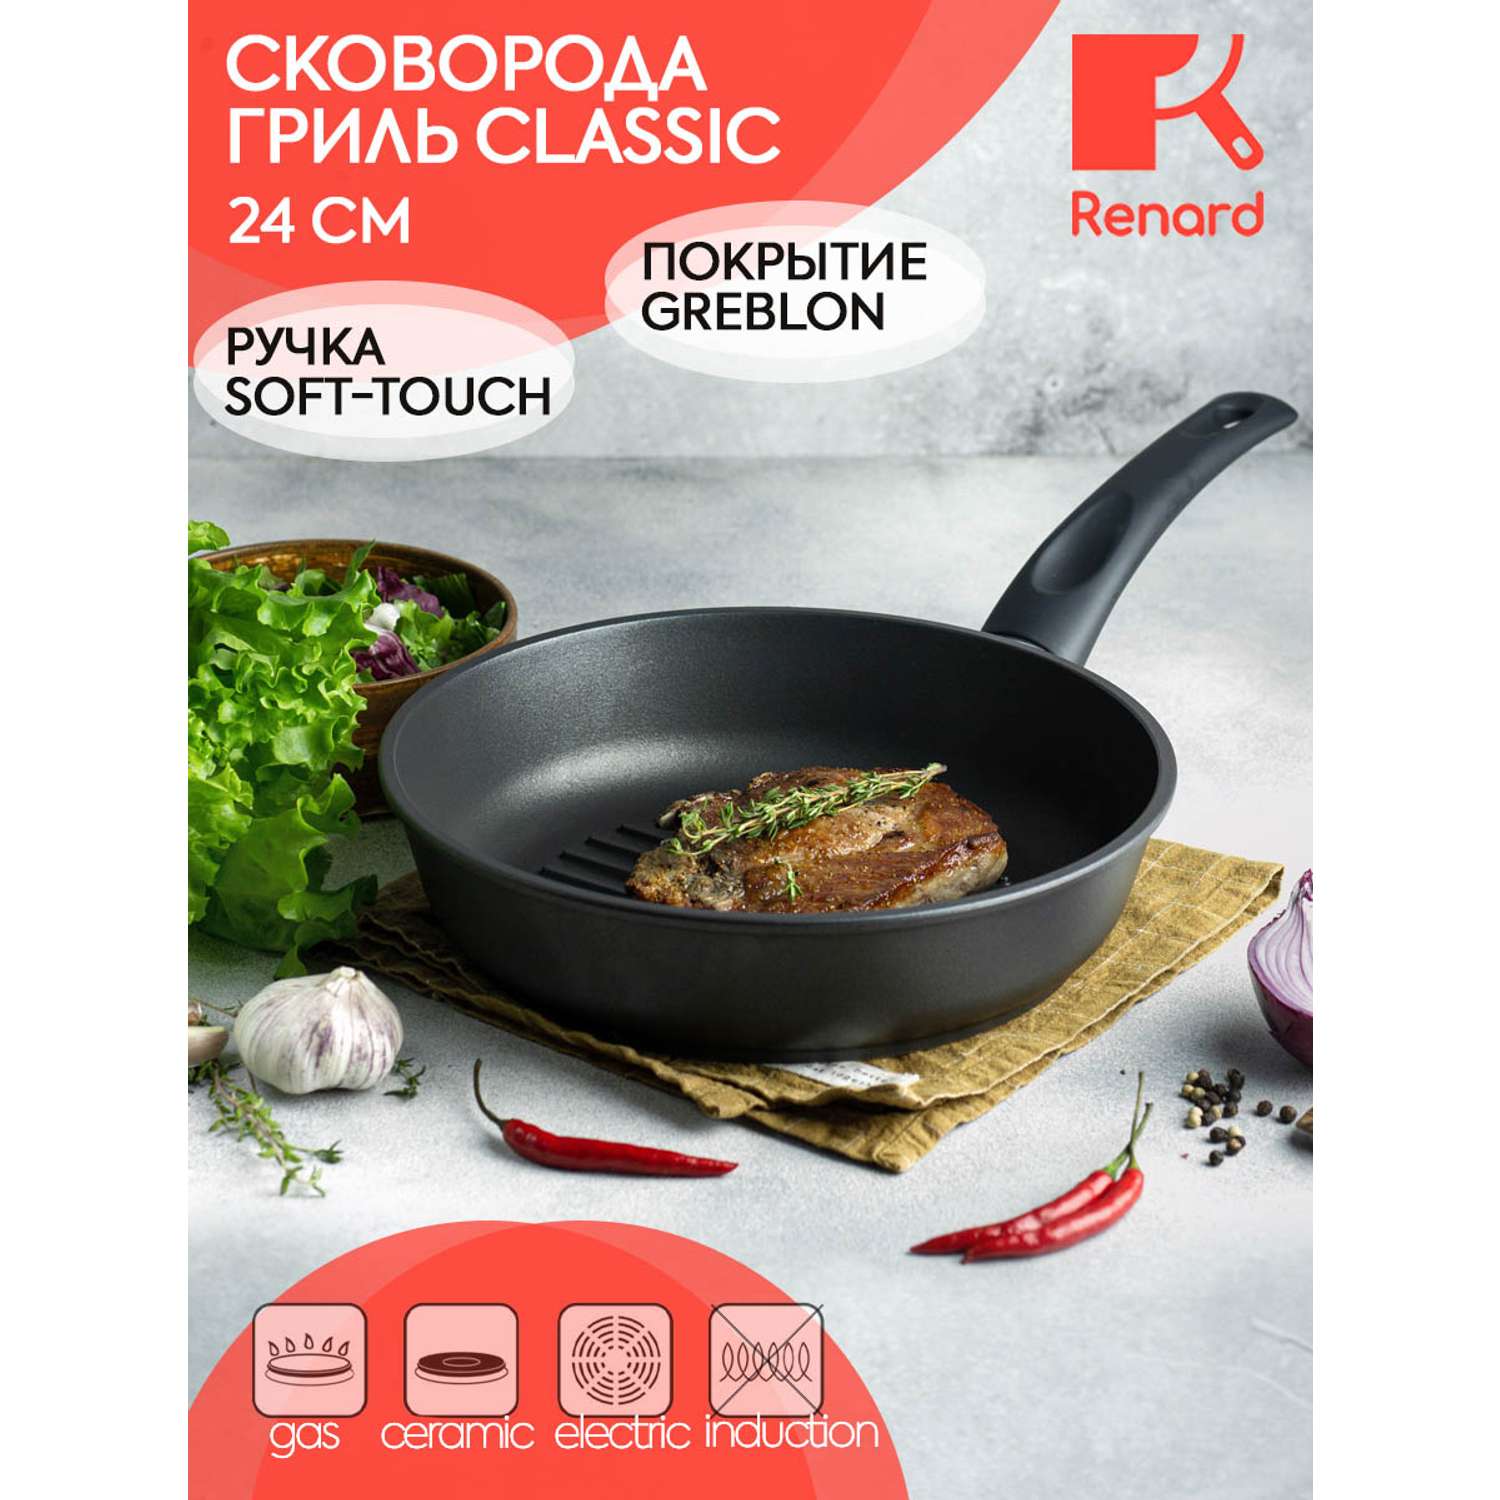 Сковорода-гриль Renard Classic 24 см - фото 1